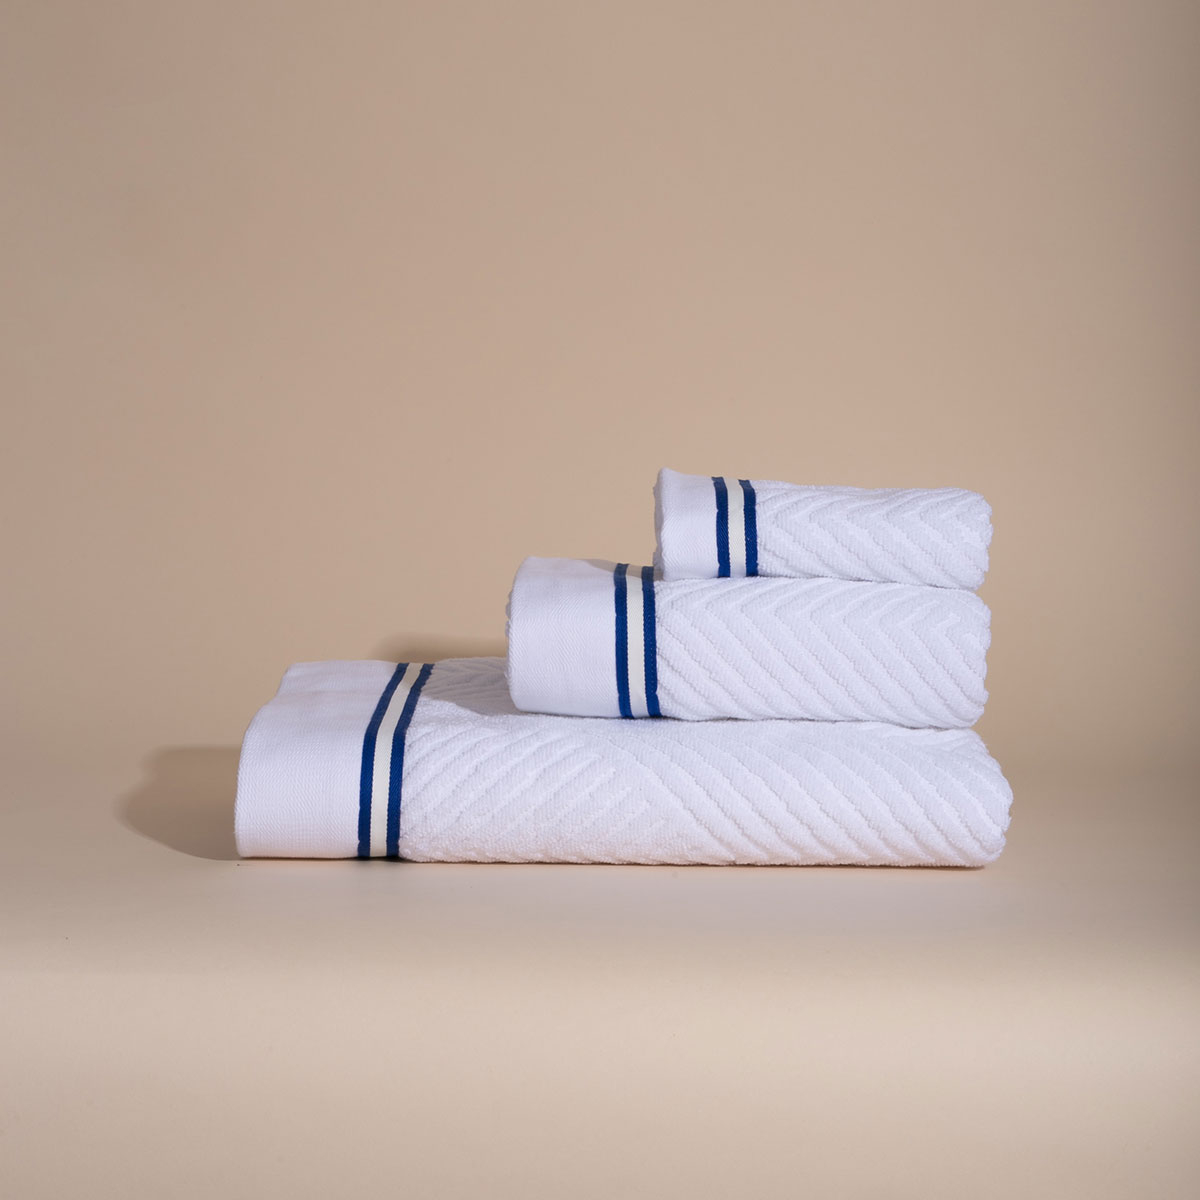 Πετσέτα Προσώπου (50×100) White Fabric Navy Line White 550gsm